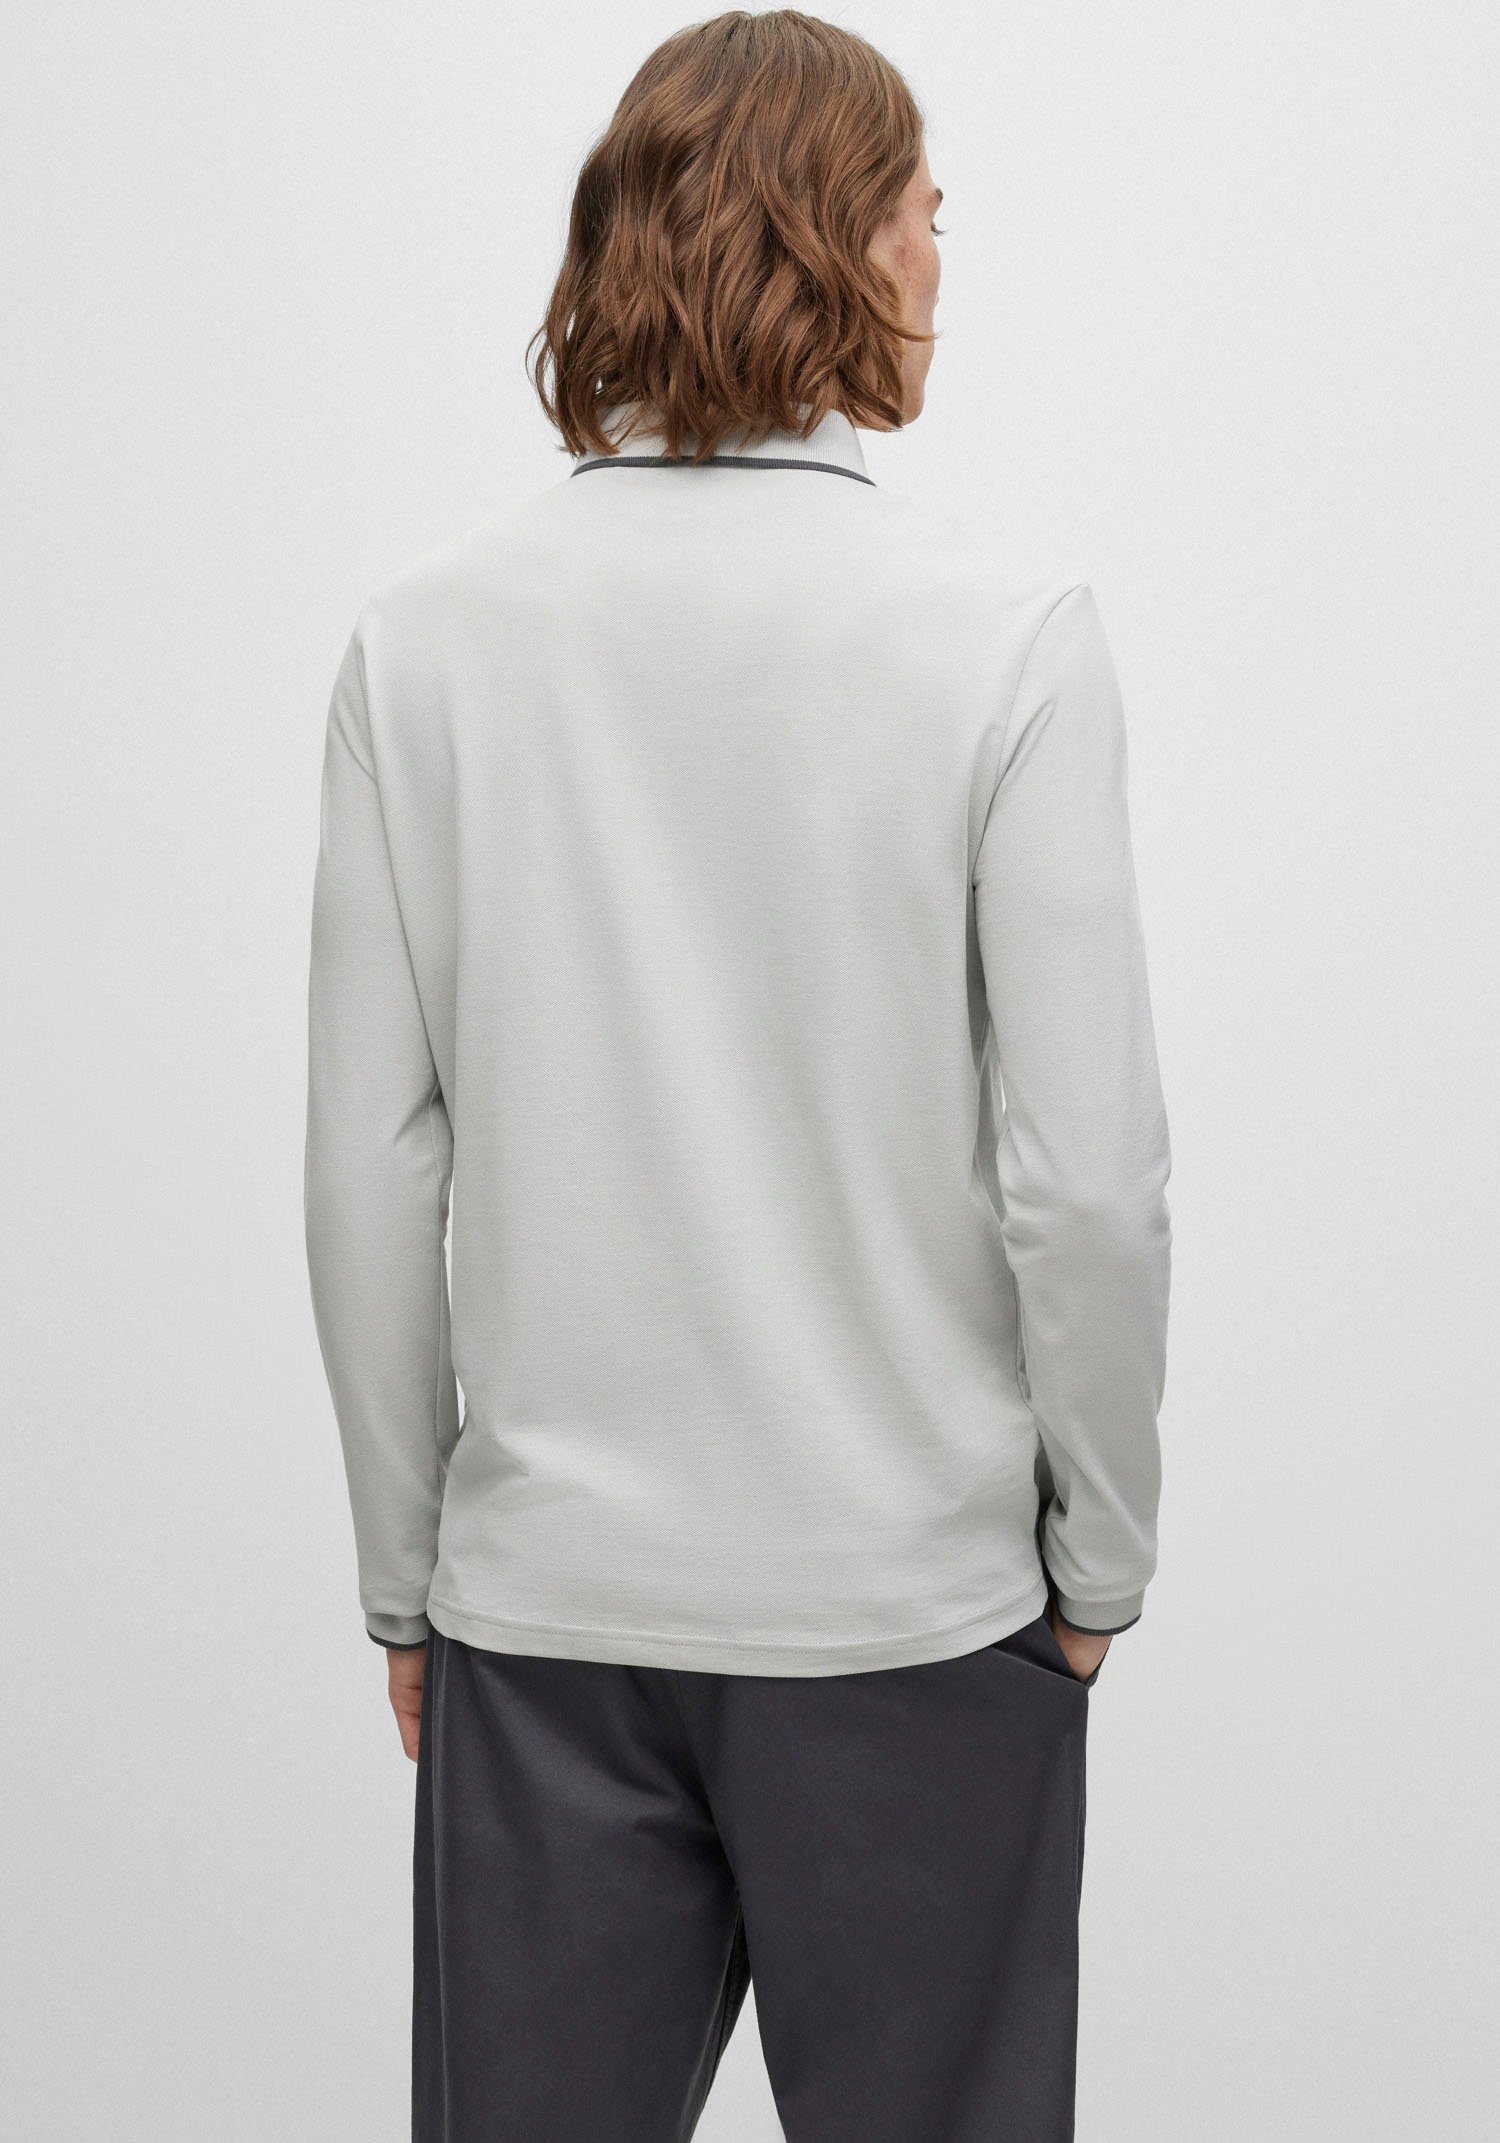 in feiner Baumwoll-Piqué Poloshirt Baumwollqualität, softem, Passertiplong BOSS ORANGE elastischem Aus